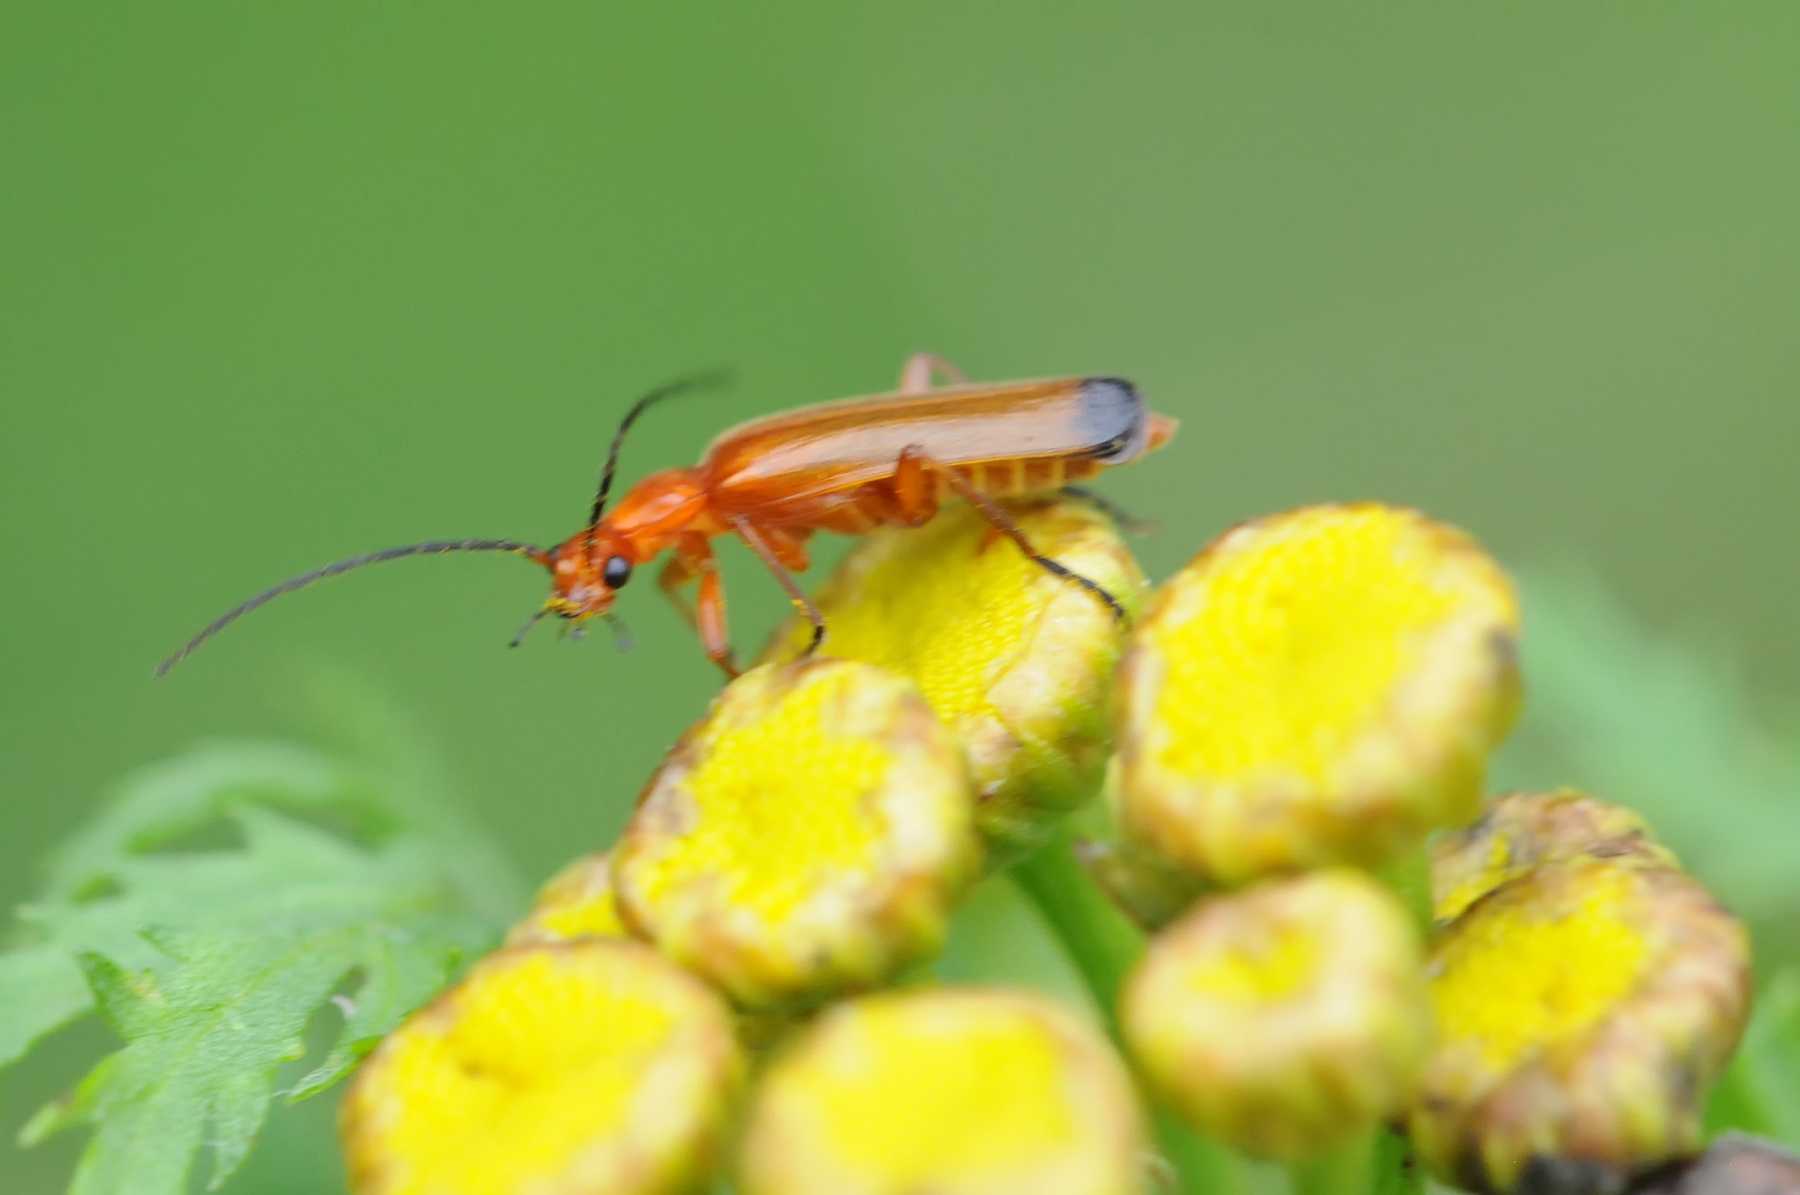 Common Red Soldier Beetle - Rhagonycha fulva, Denaby Ings.